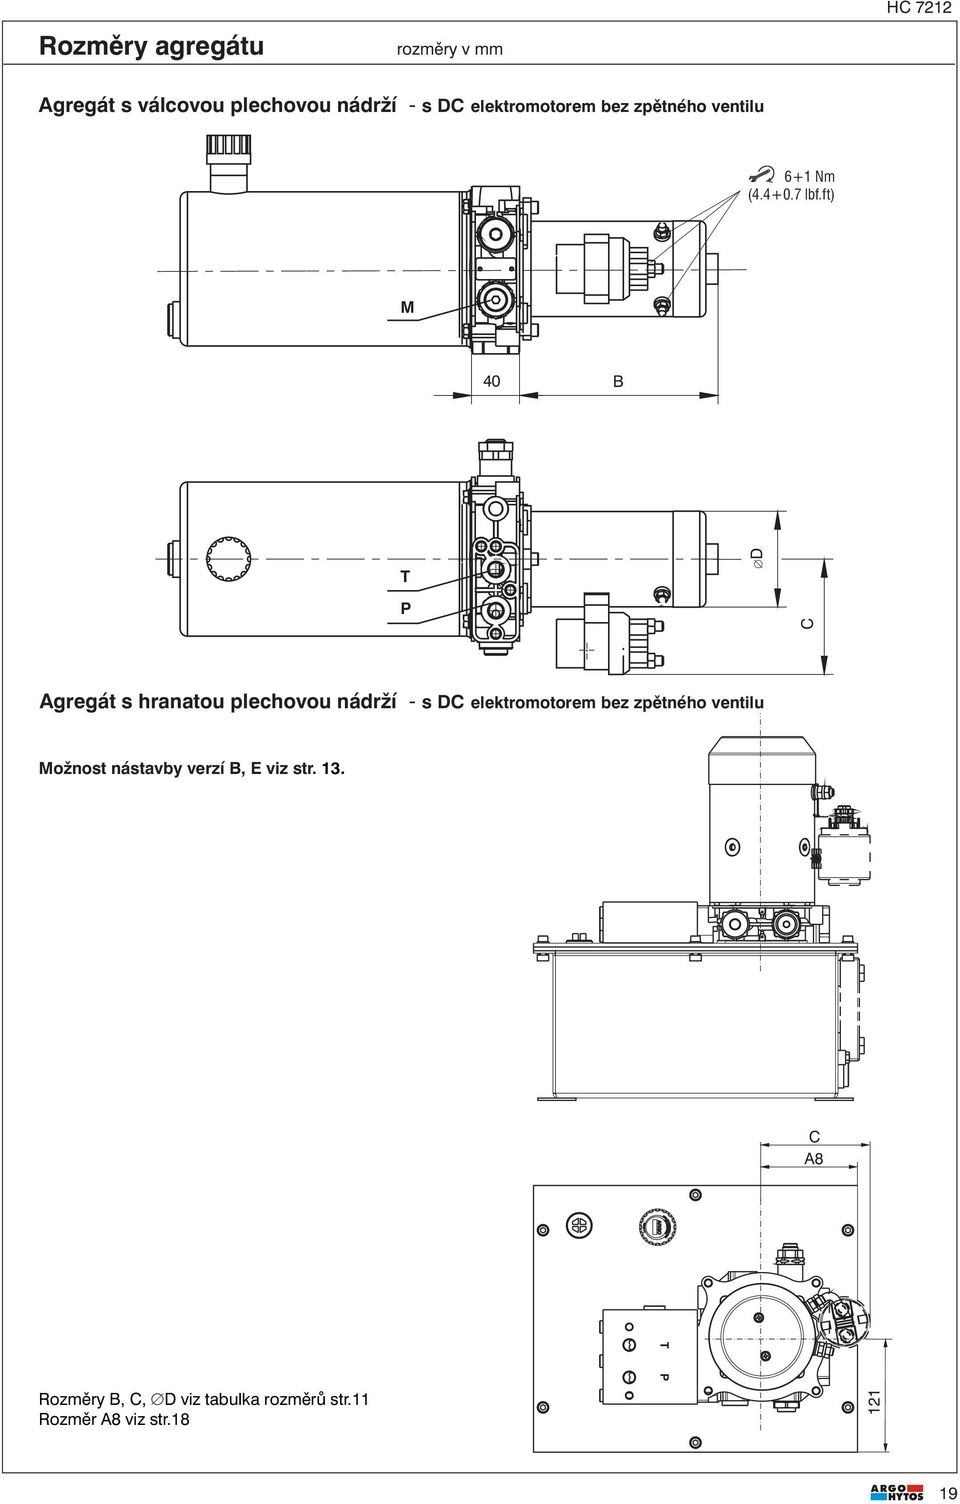 ft) D C gregát s hranatou plechovou nádrží - s DC elektromotorem bez zpětného ventilu